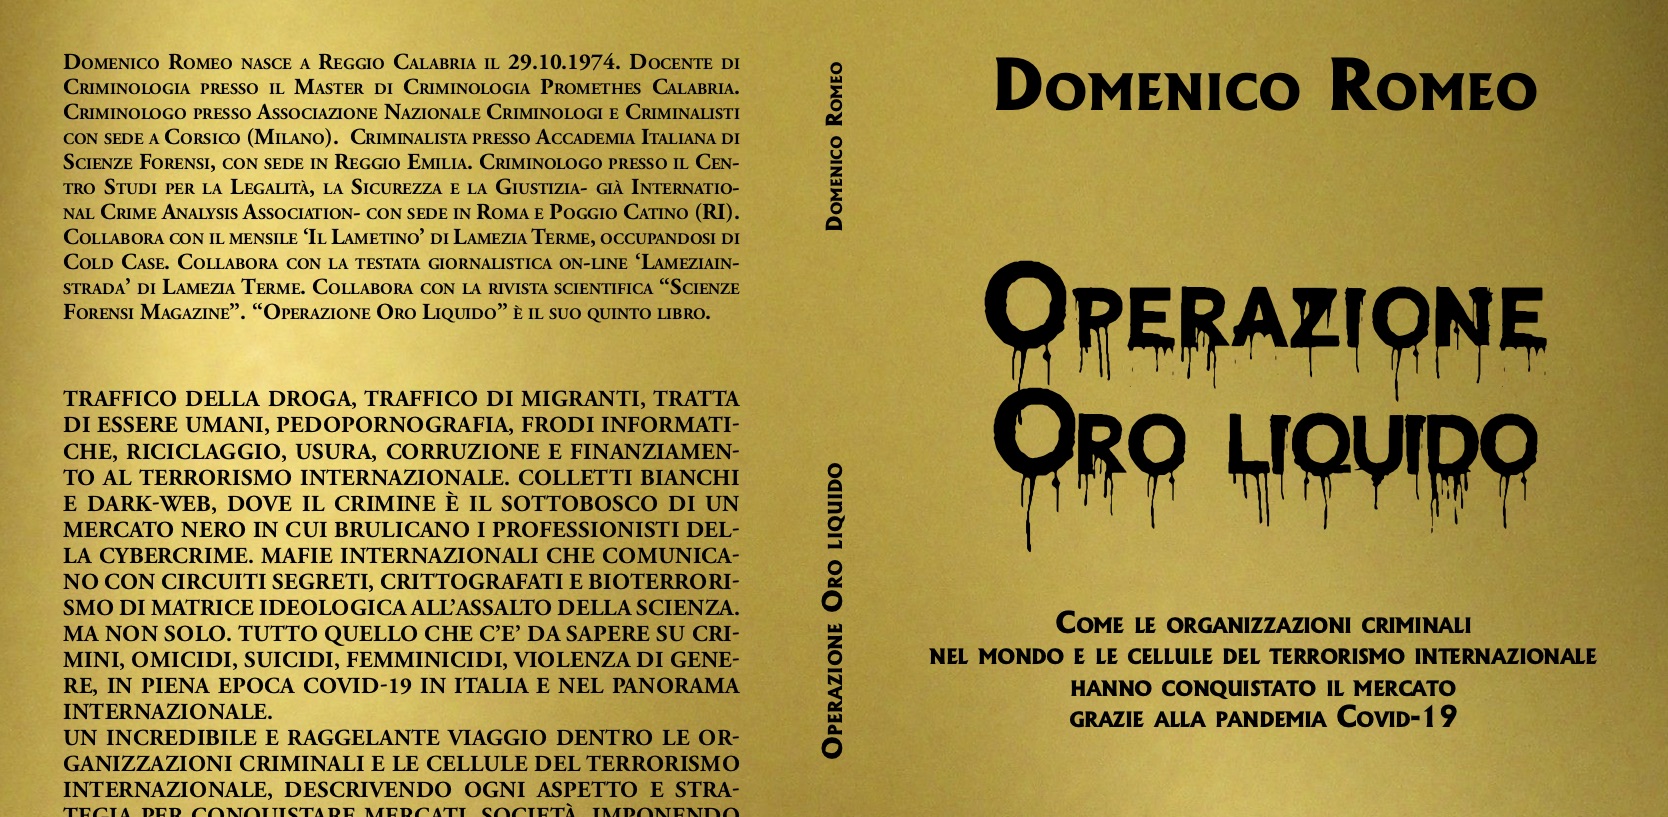 Mafia e pandemia, in libreria il nuovo lavoro di Domenico Romeo